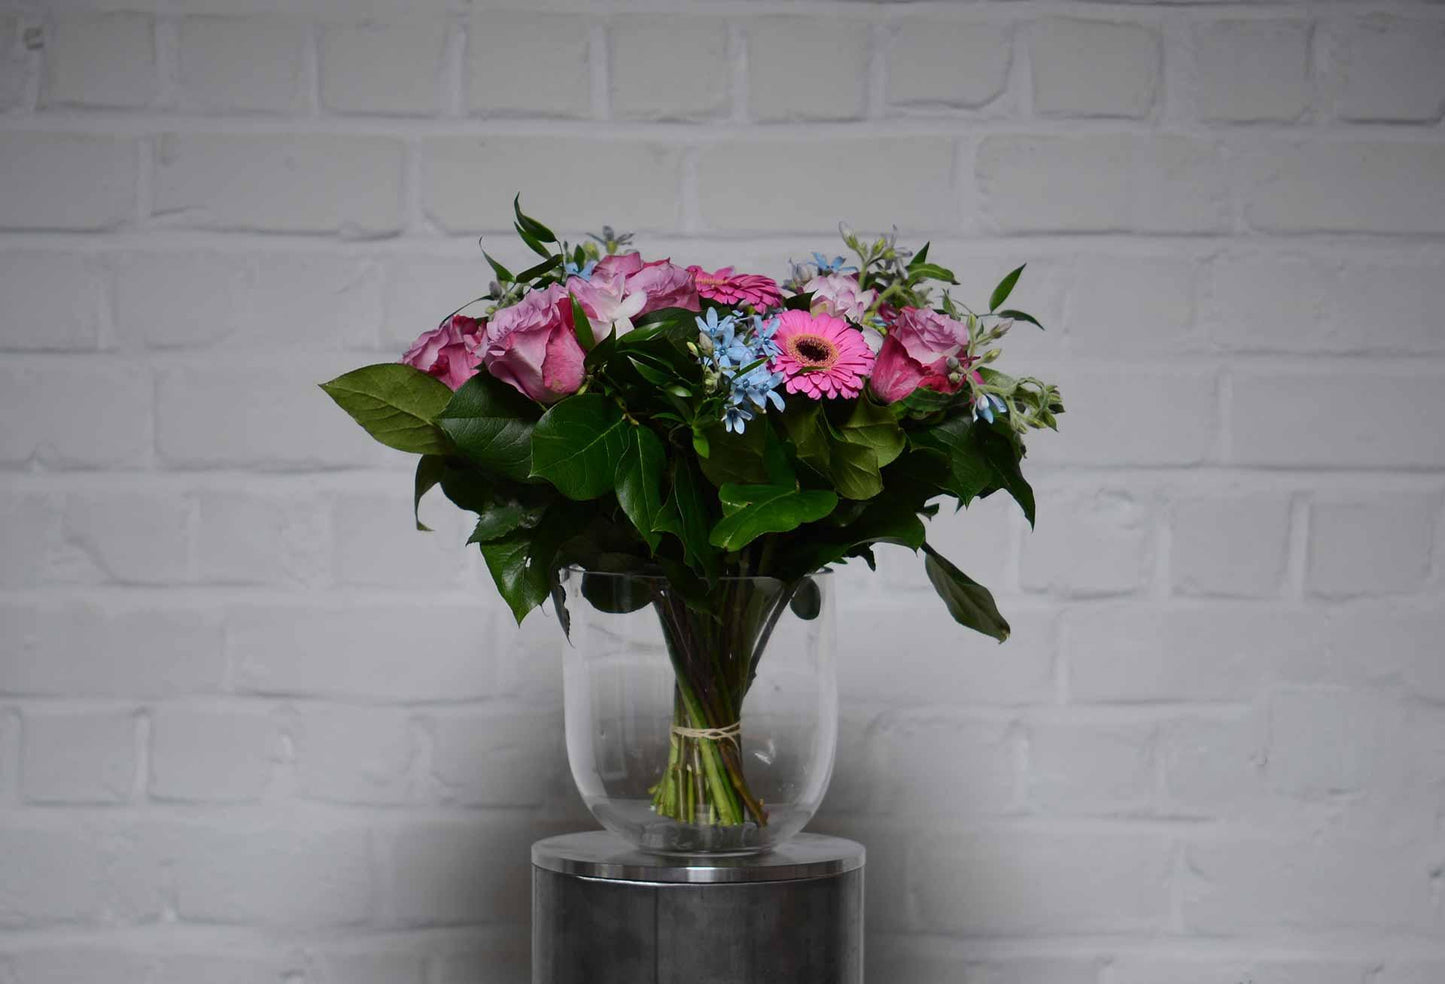 Offrir un abonnement de fleurs - Daily flowers - Bouquet - Daily flowers